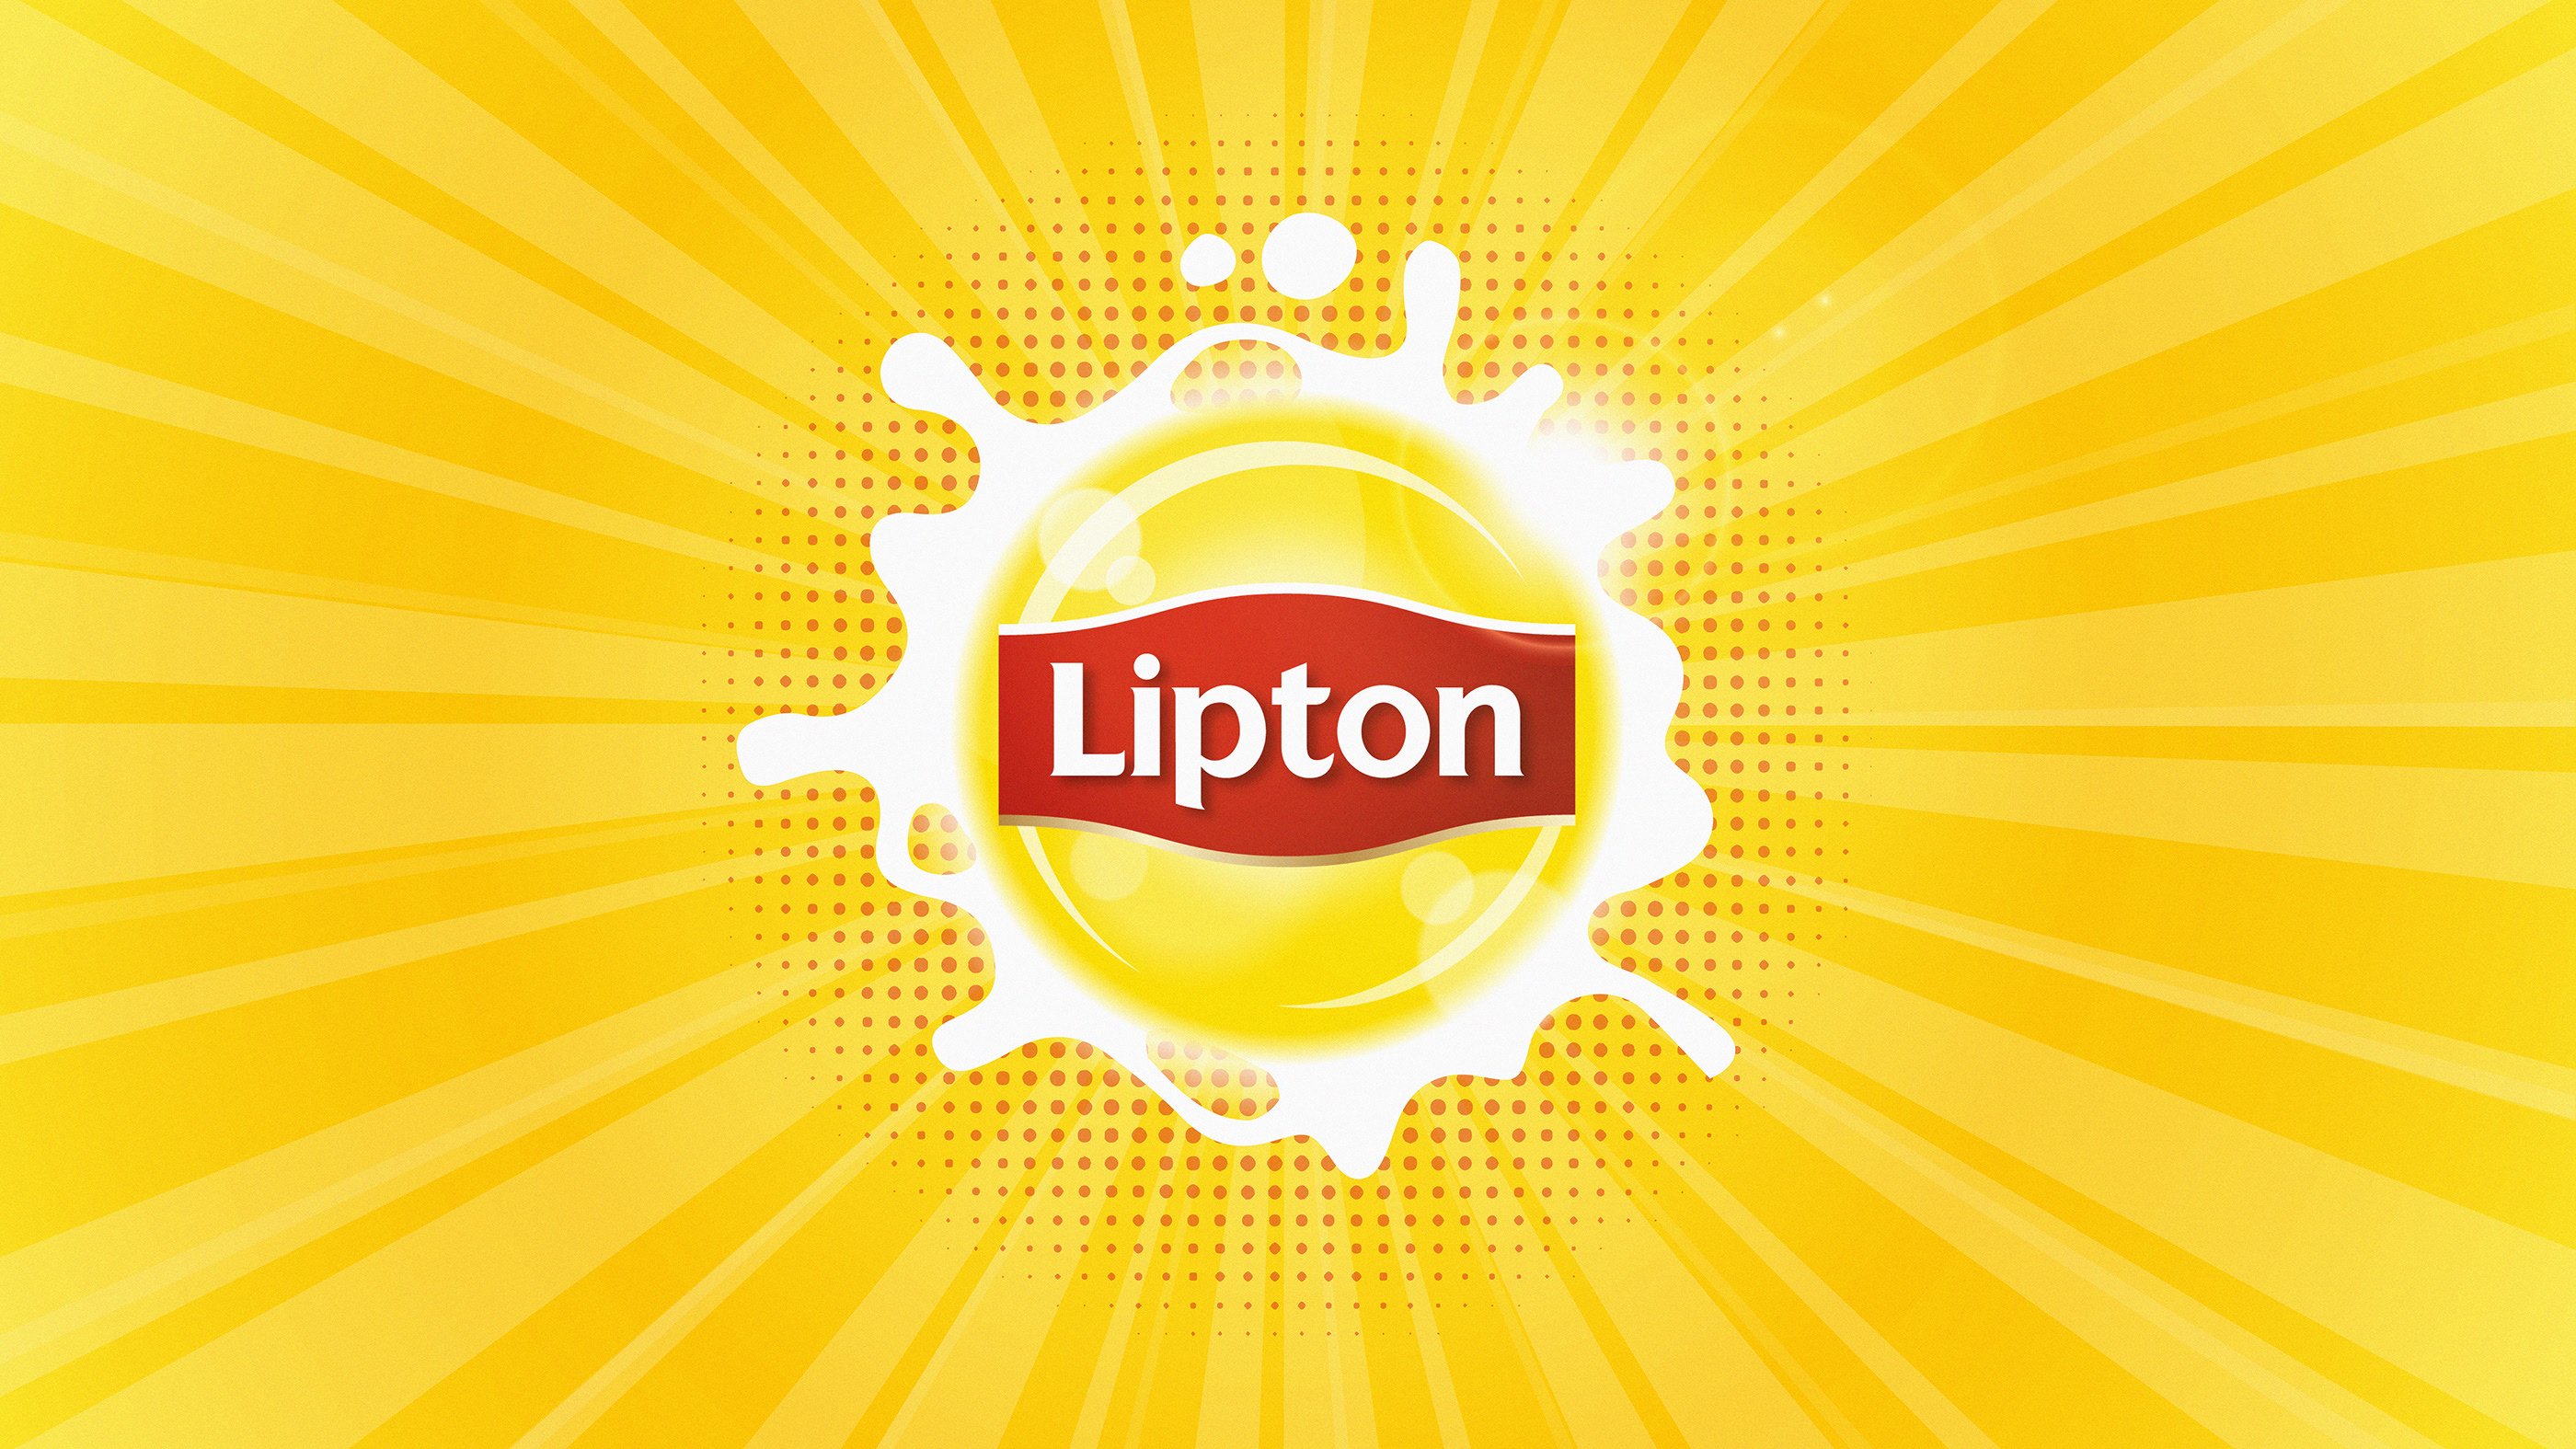 Картинки липтона. Липтон зеленый чай лого. Липтон логотип. Чай Липтон логотип. Липтон слоган.